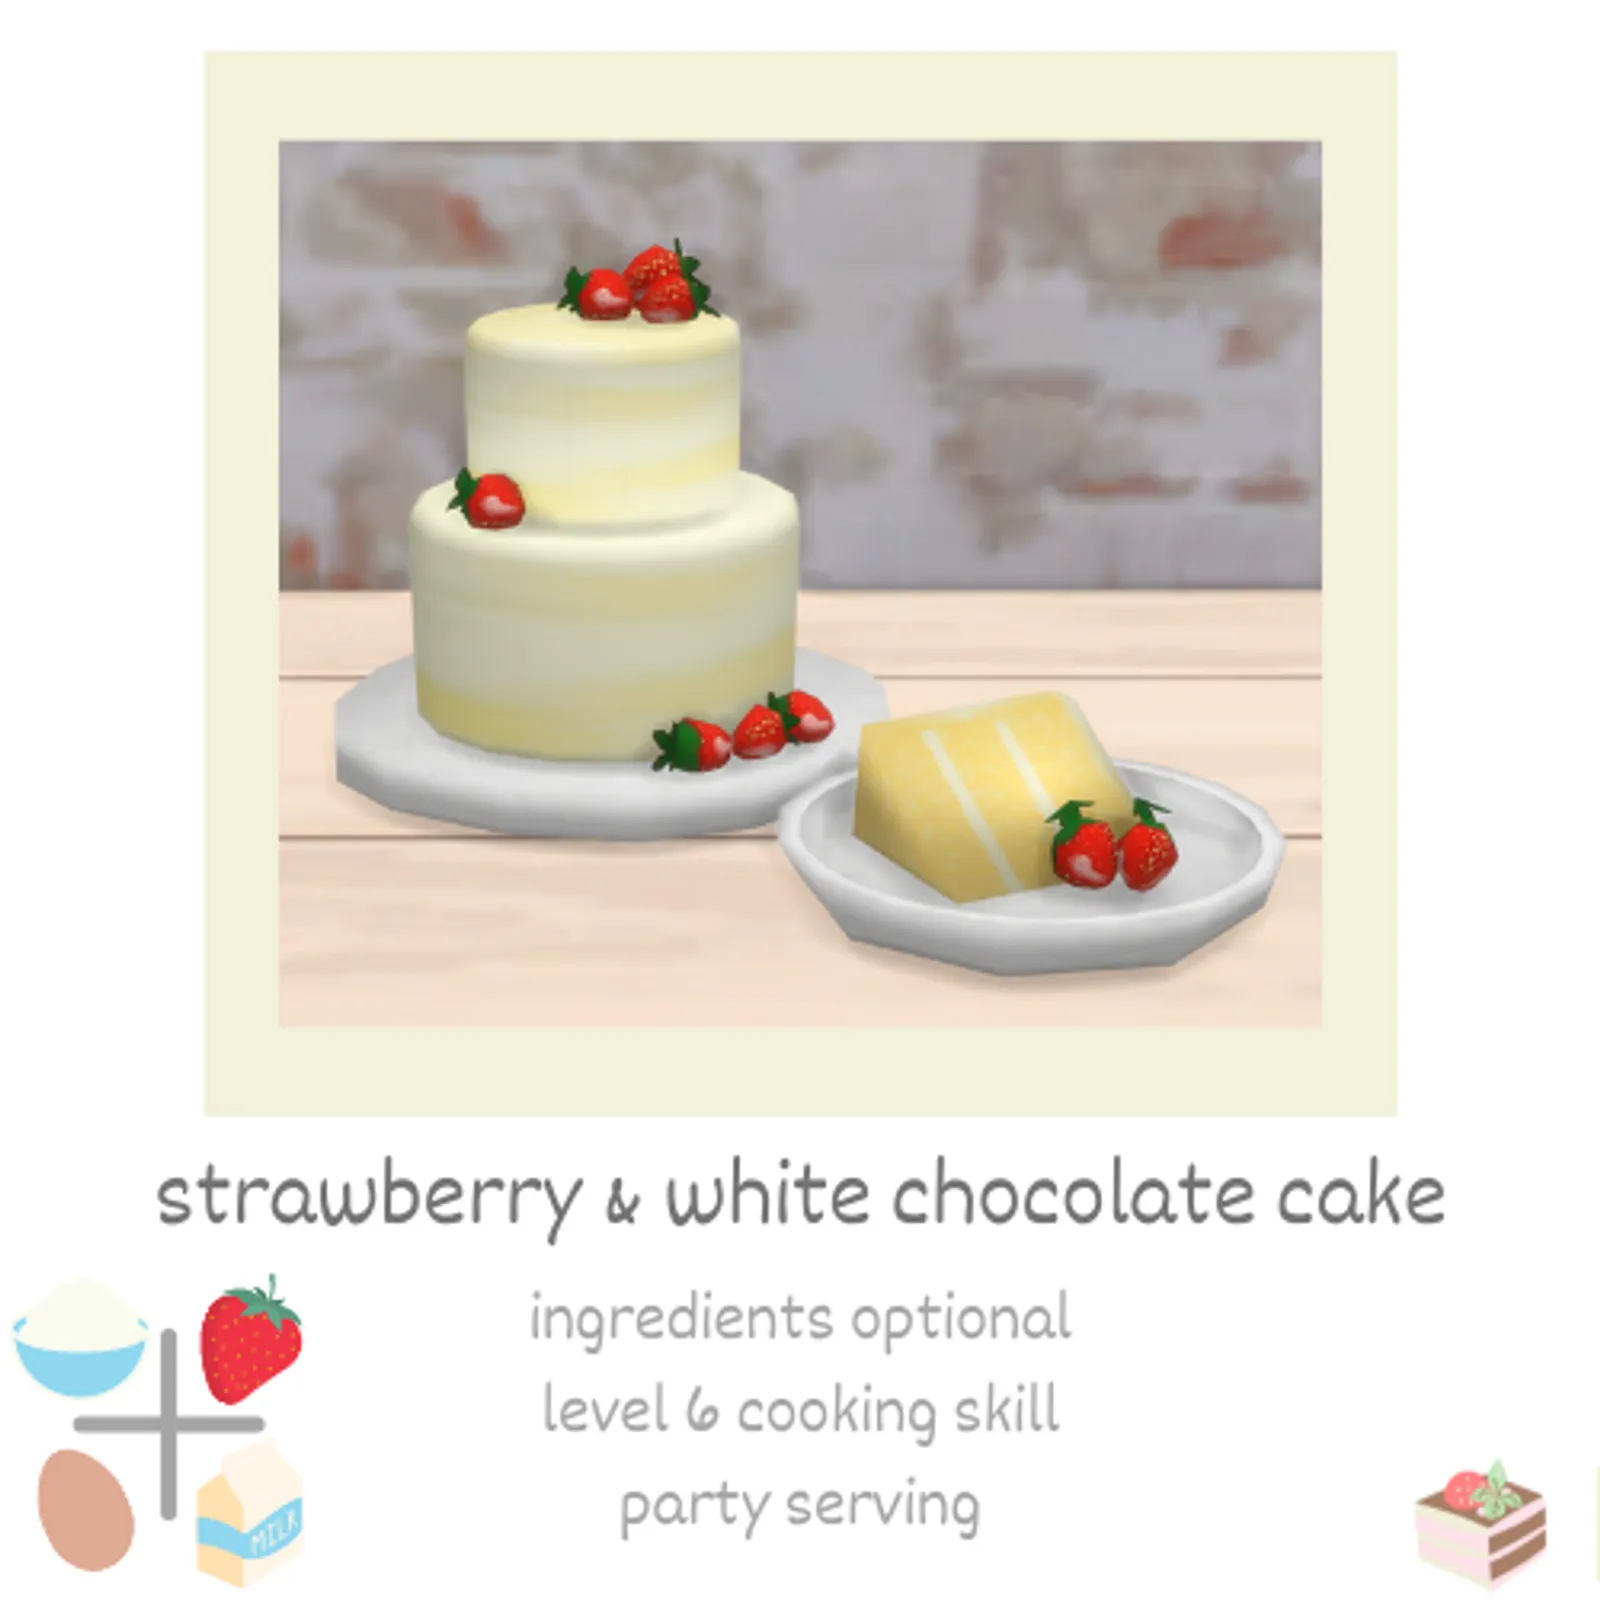 strawberry & white chocolate cake 